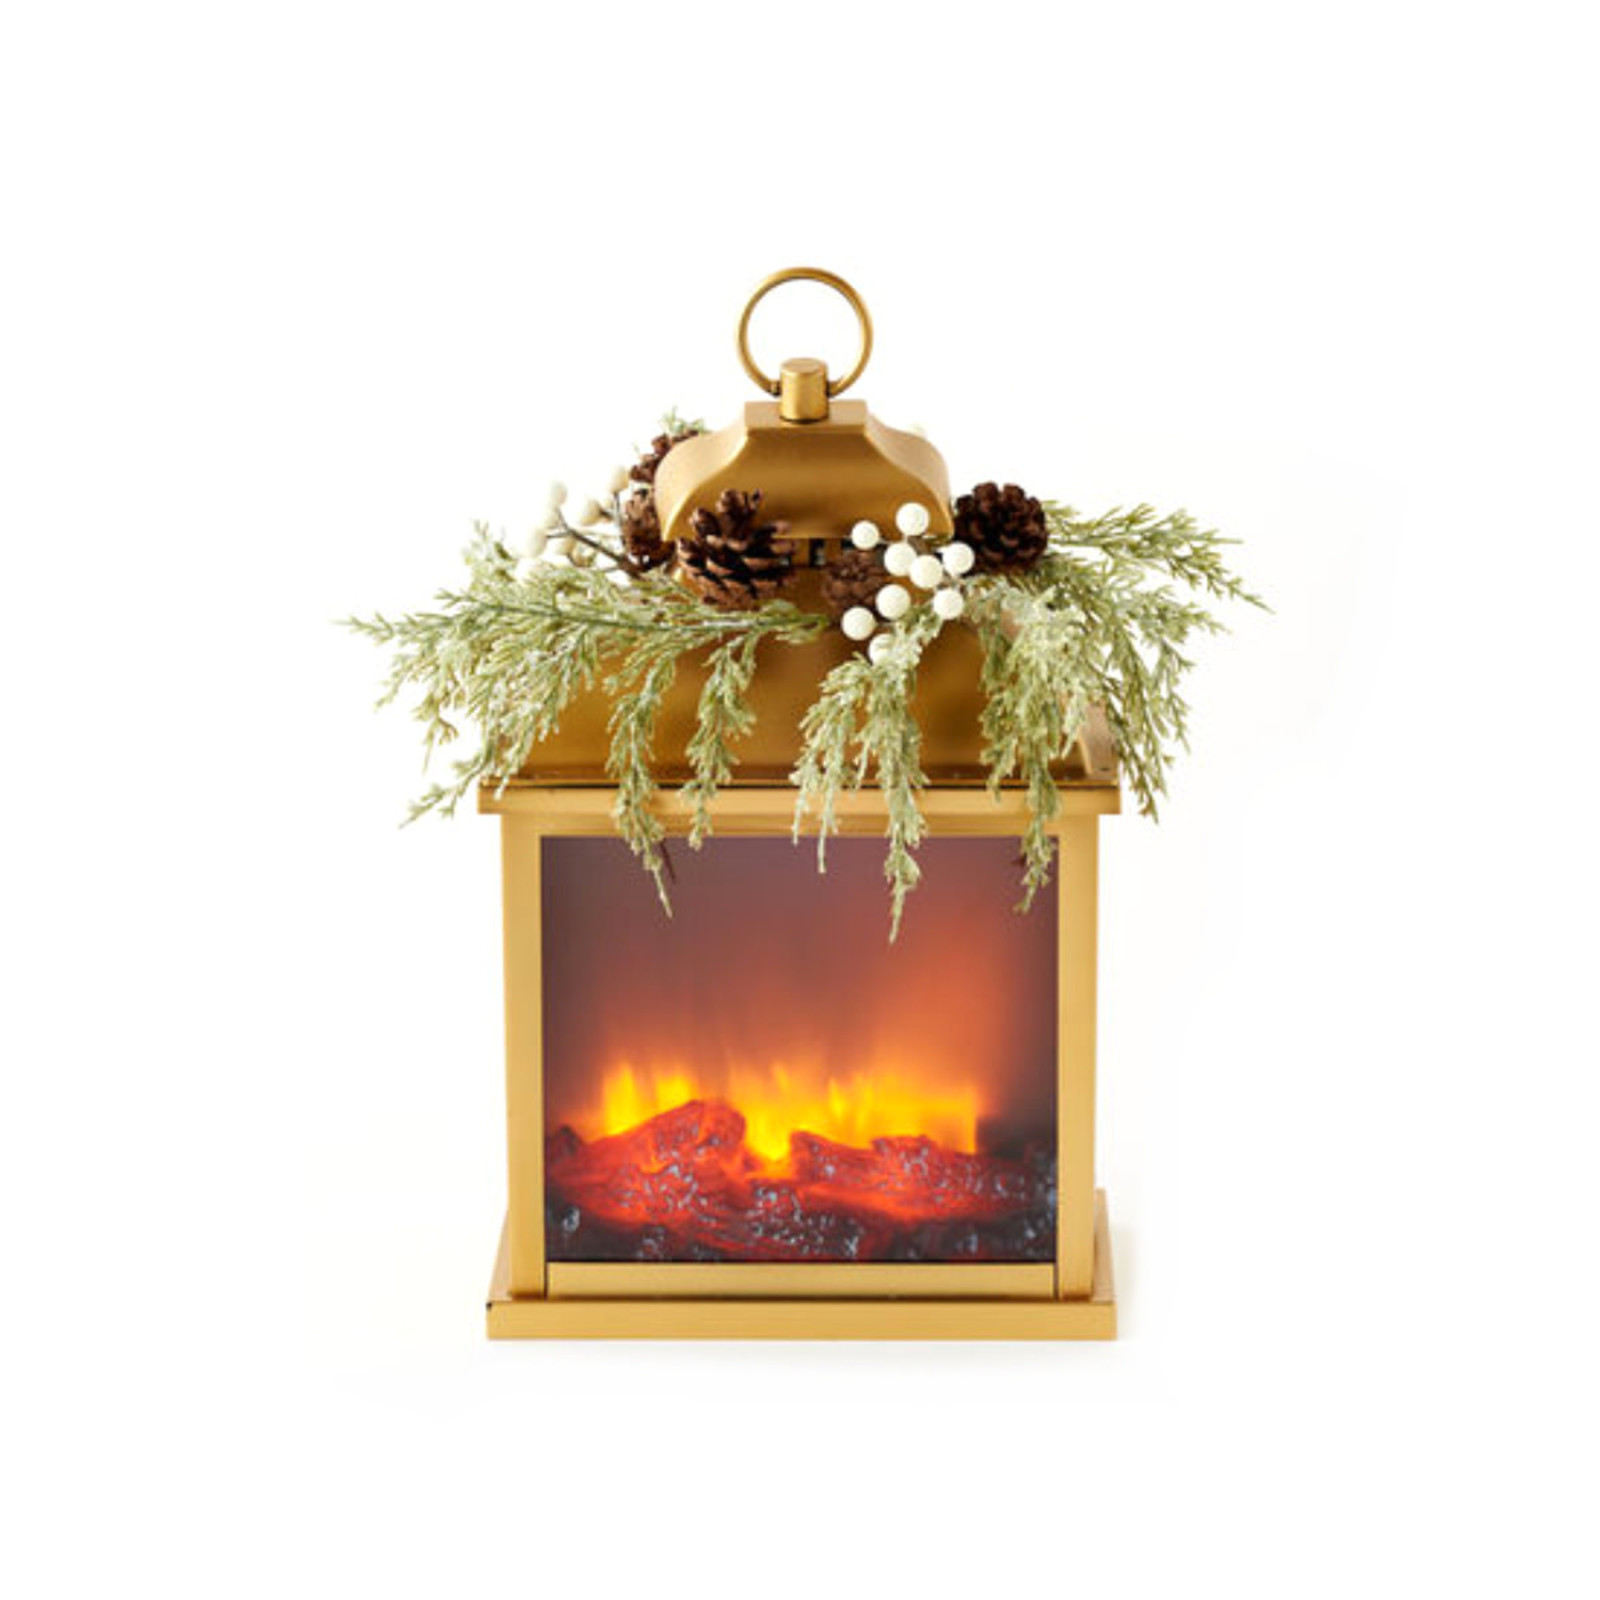 One Hundred 80 Degrees Fire Light Lantern w/Pine Wreath, Gold  EM2126 loading=